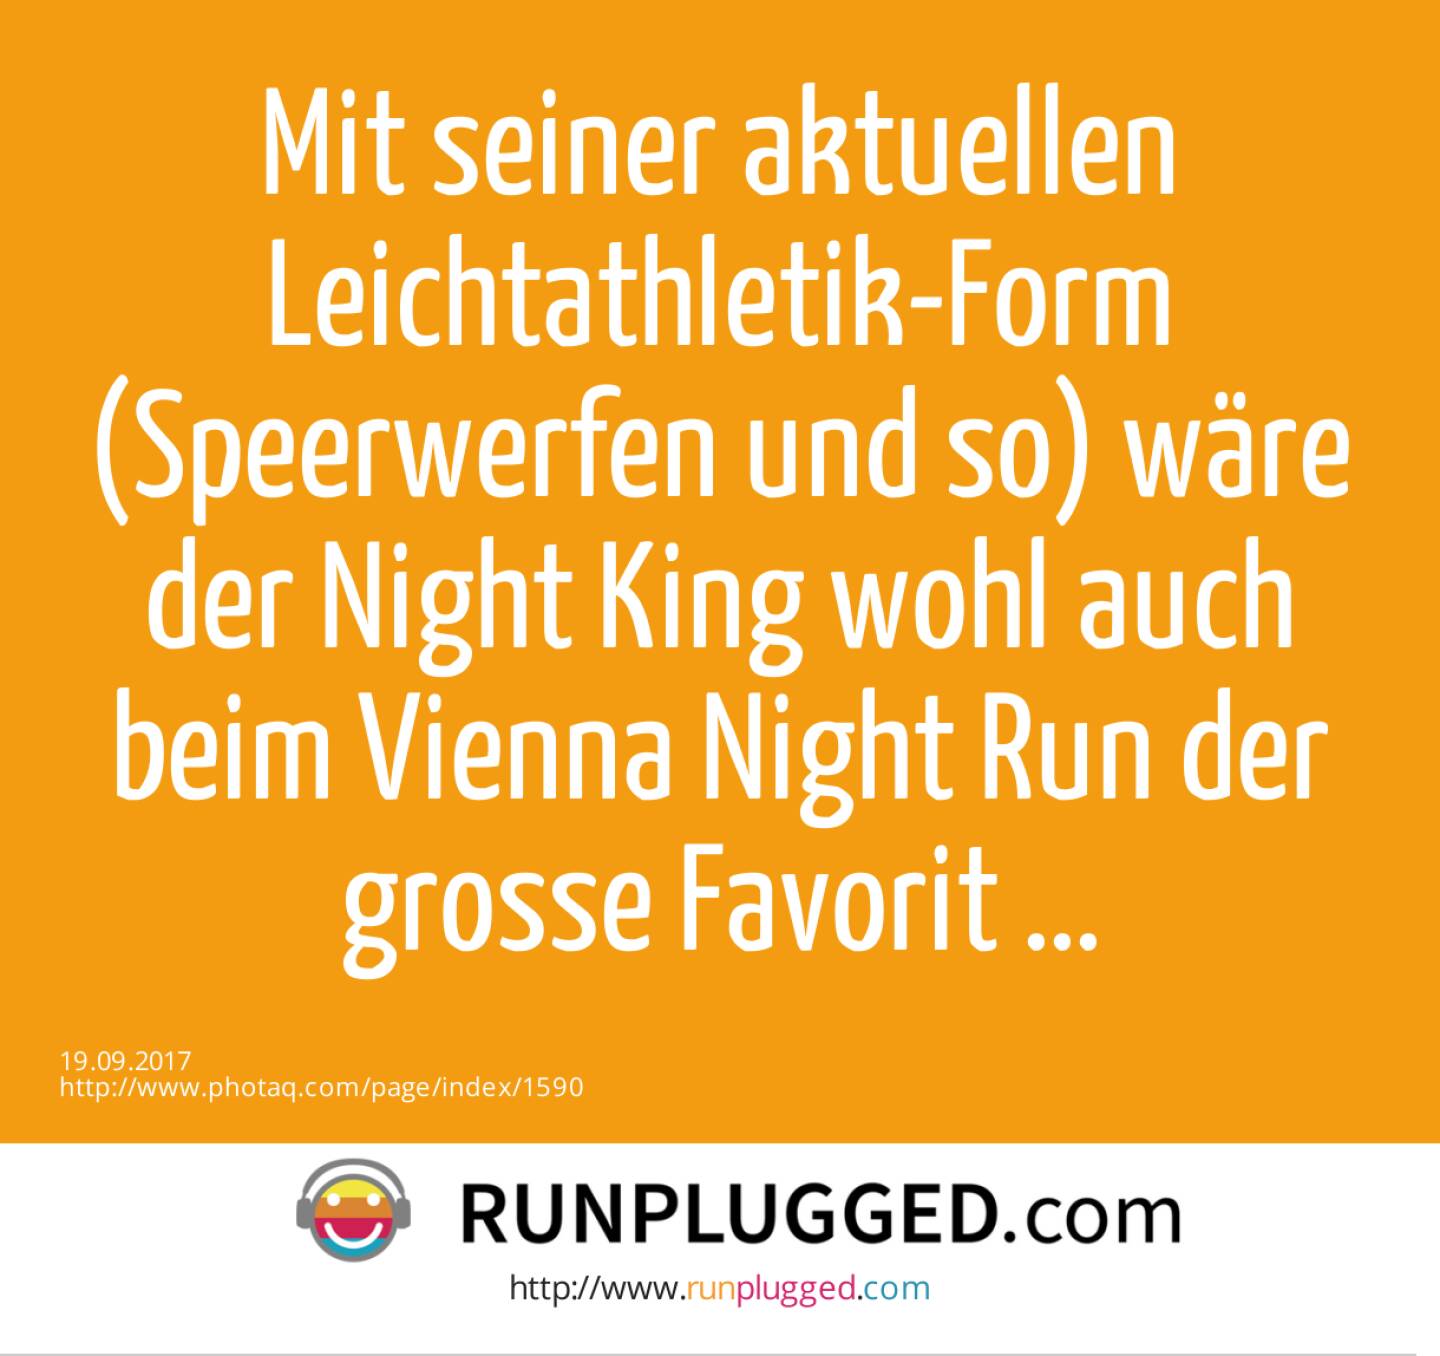 Mit seiner aktuellen Leichtathletik-Form (Speerwerfen und so) wäre der Night King wohl auch beim Vienna Night Run der grosse Favorit ... 